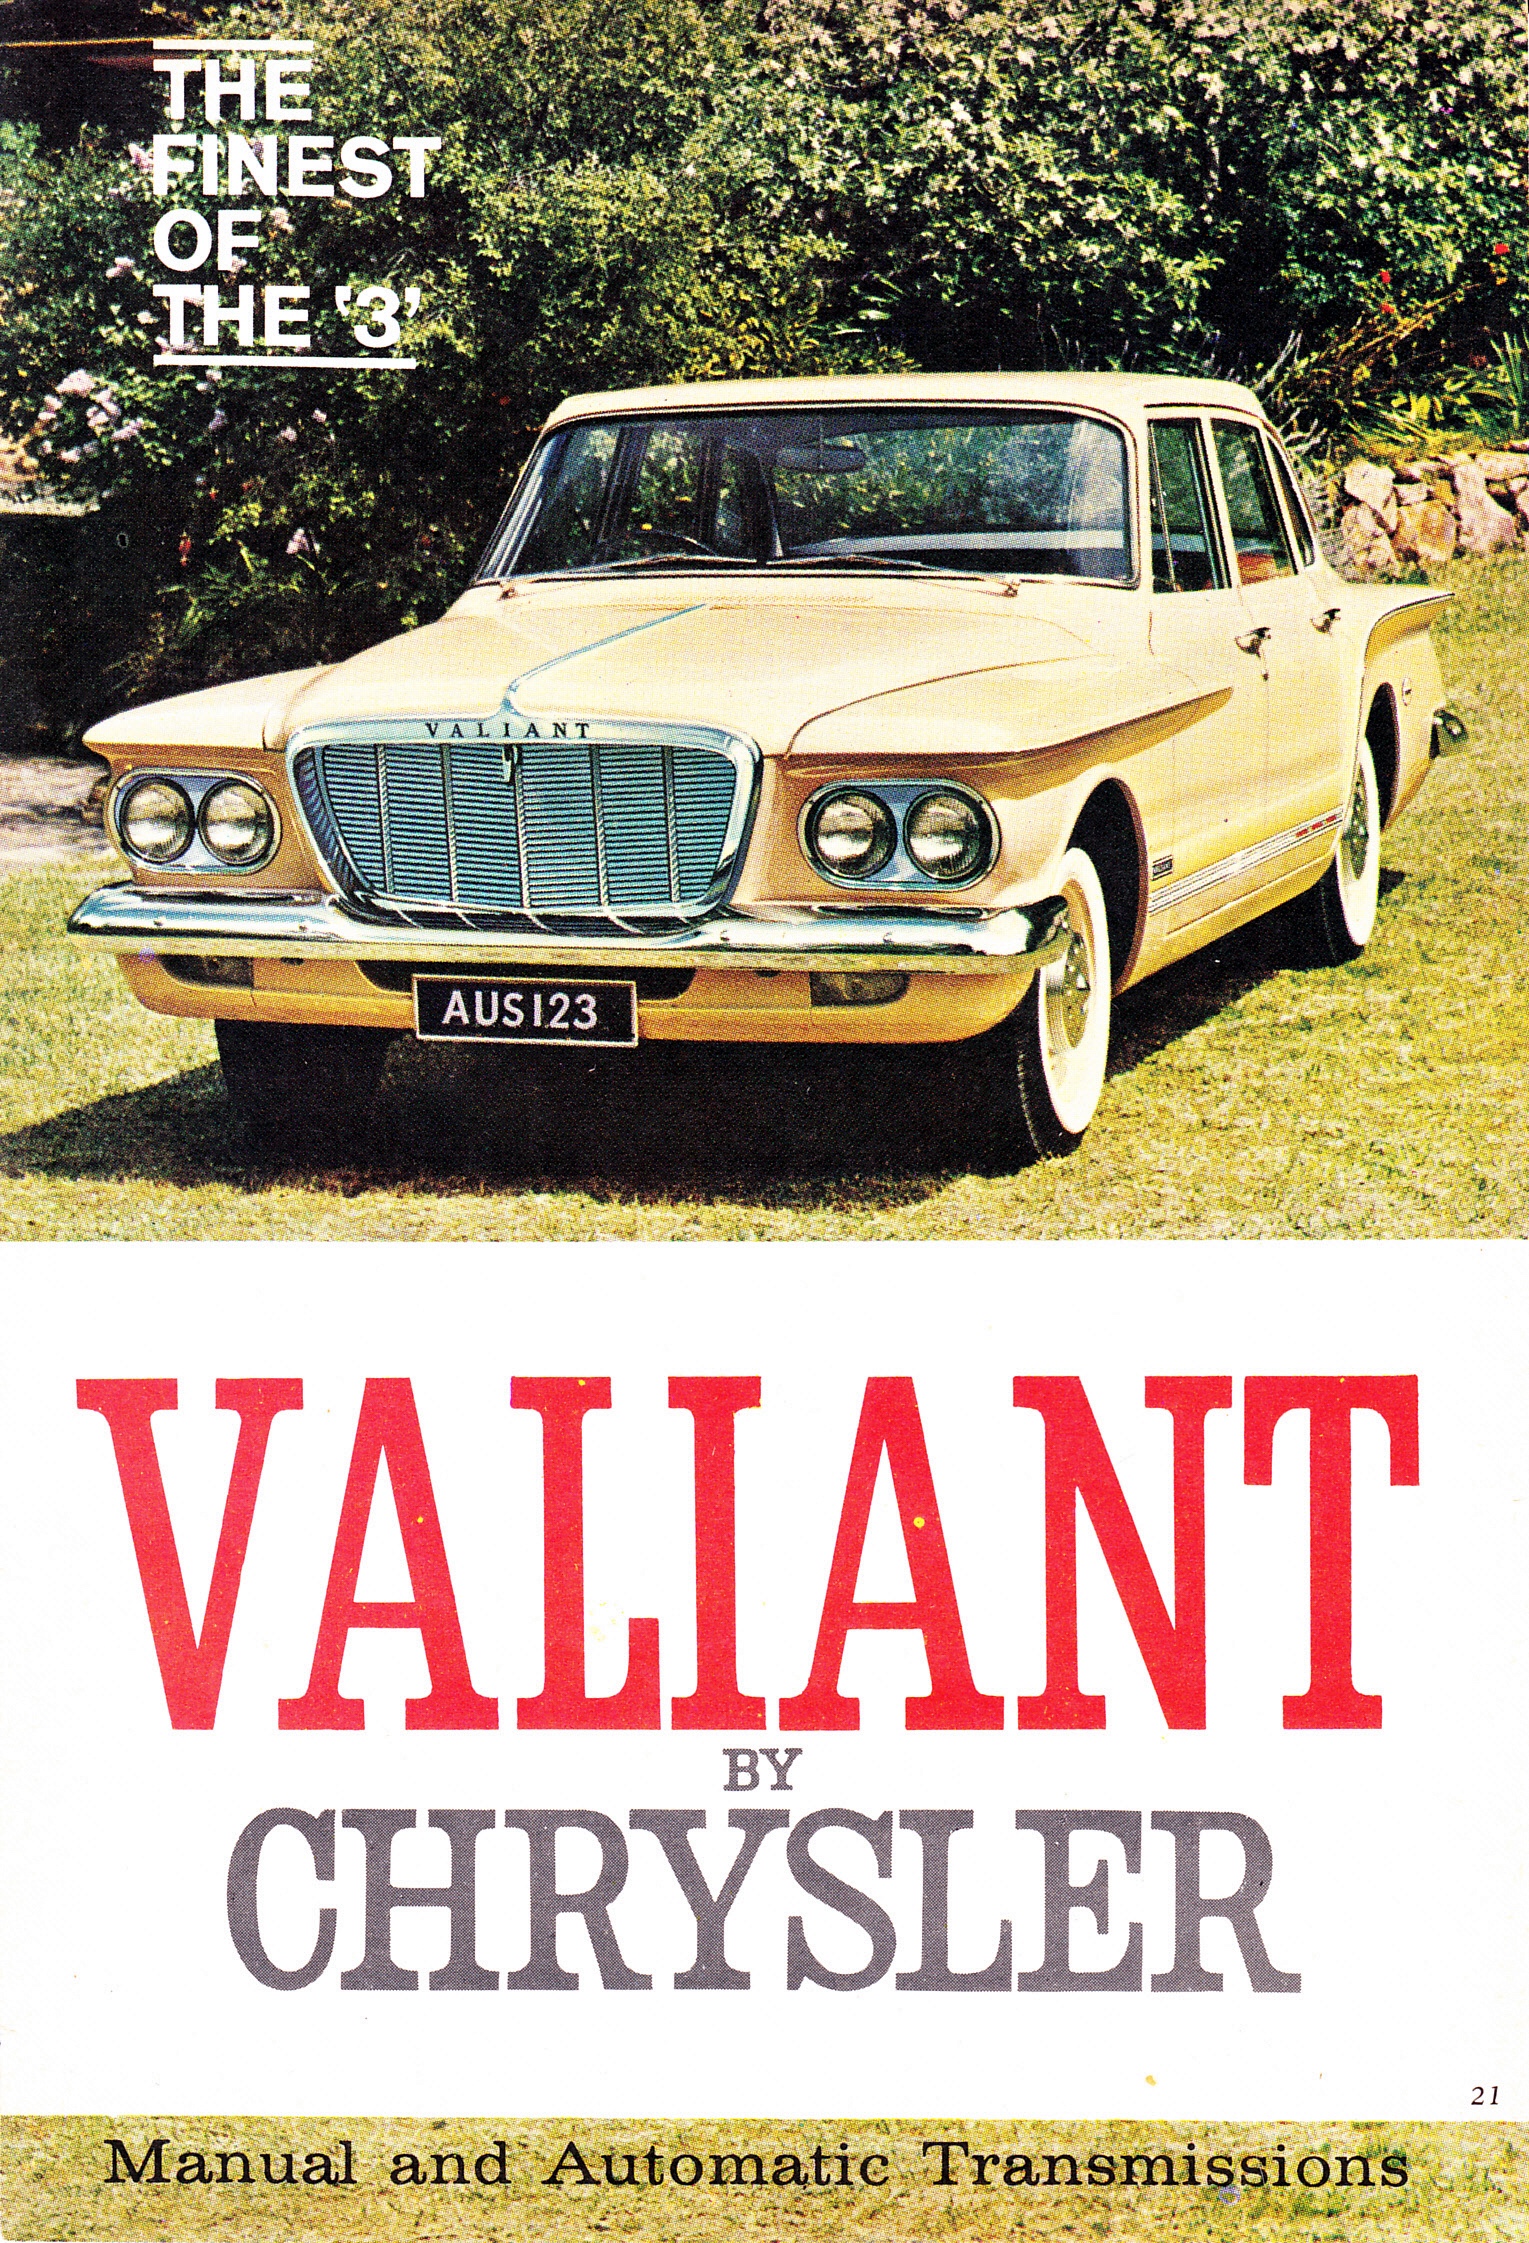 1962 Chrysler Valiant SV1 Sedan